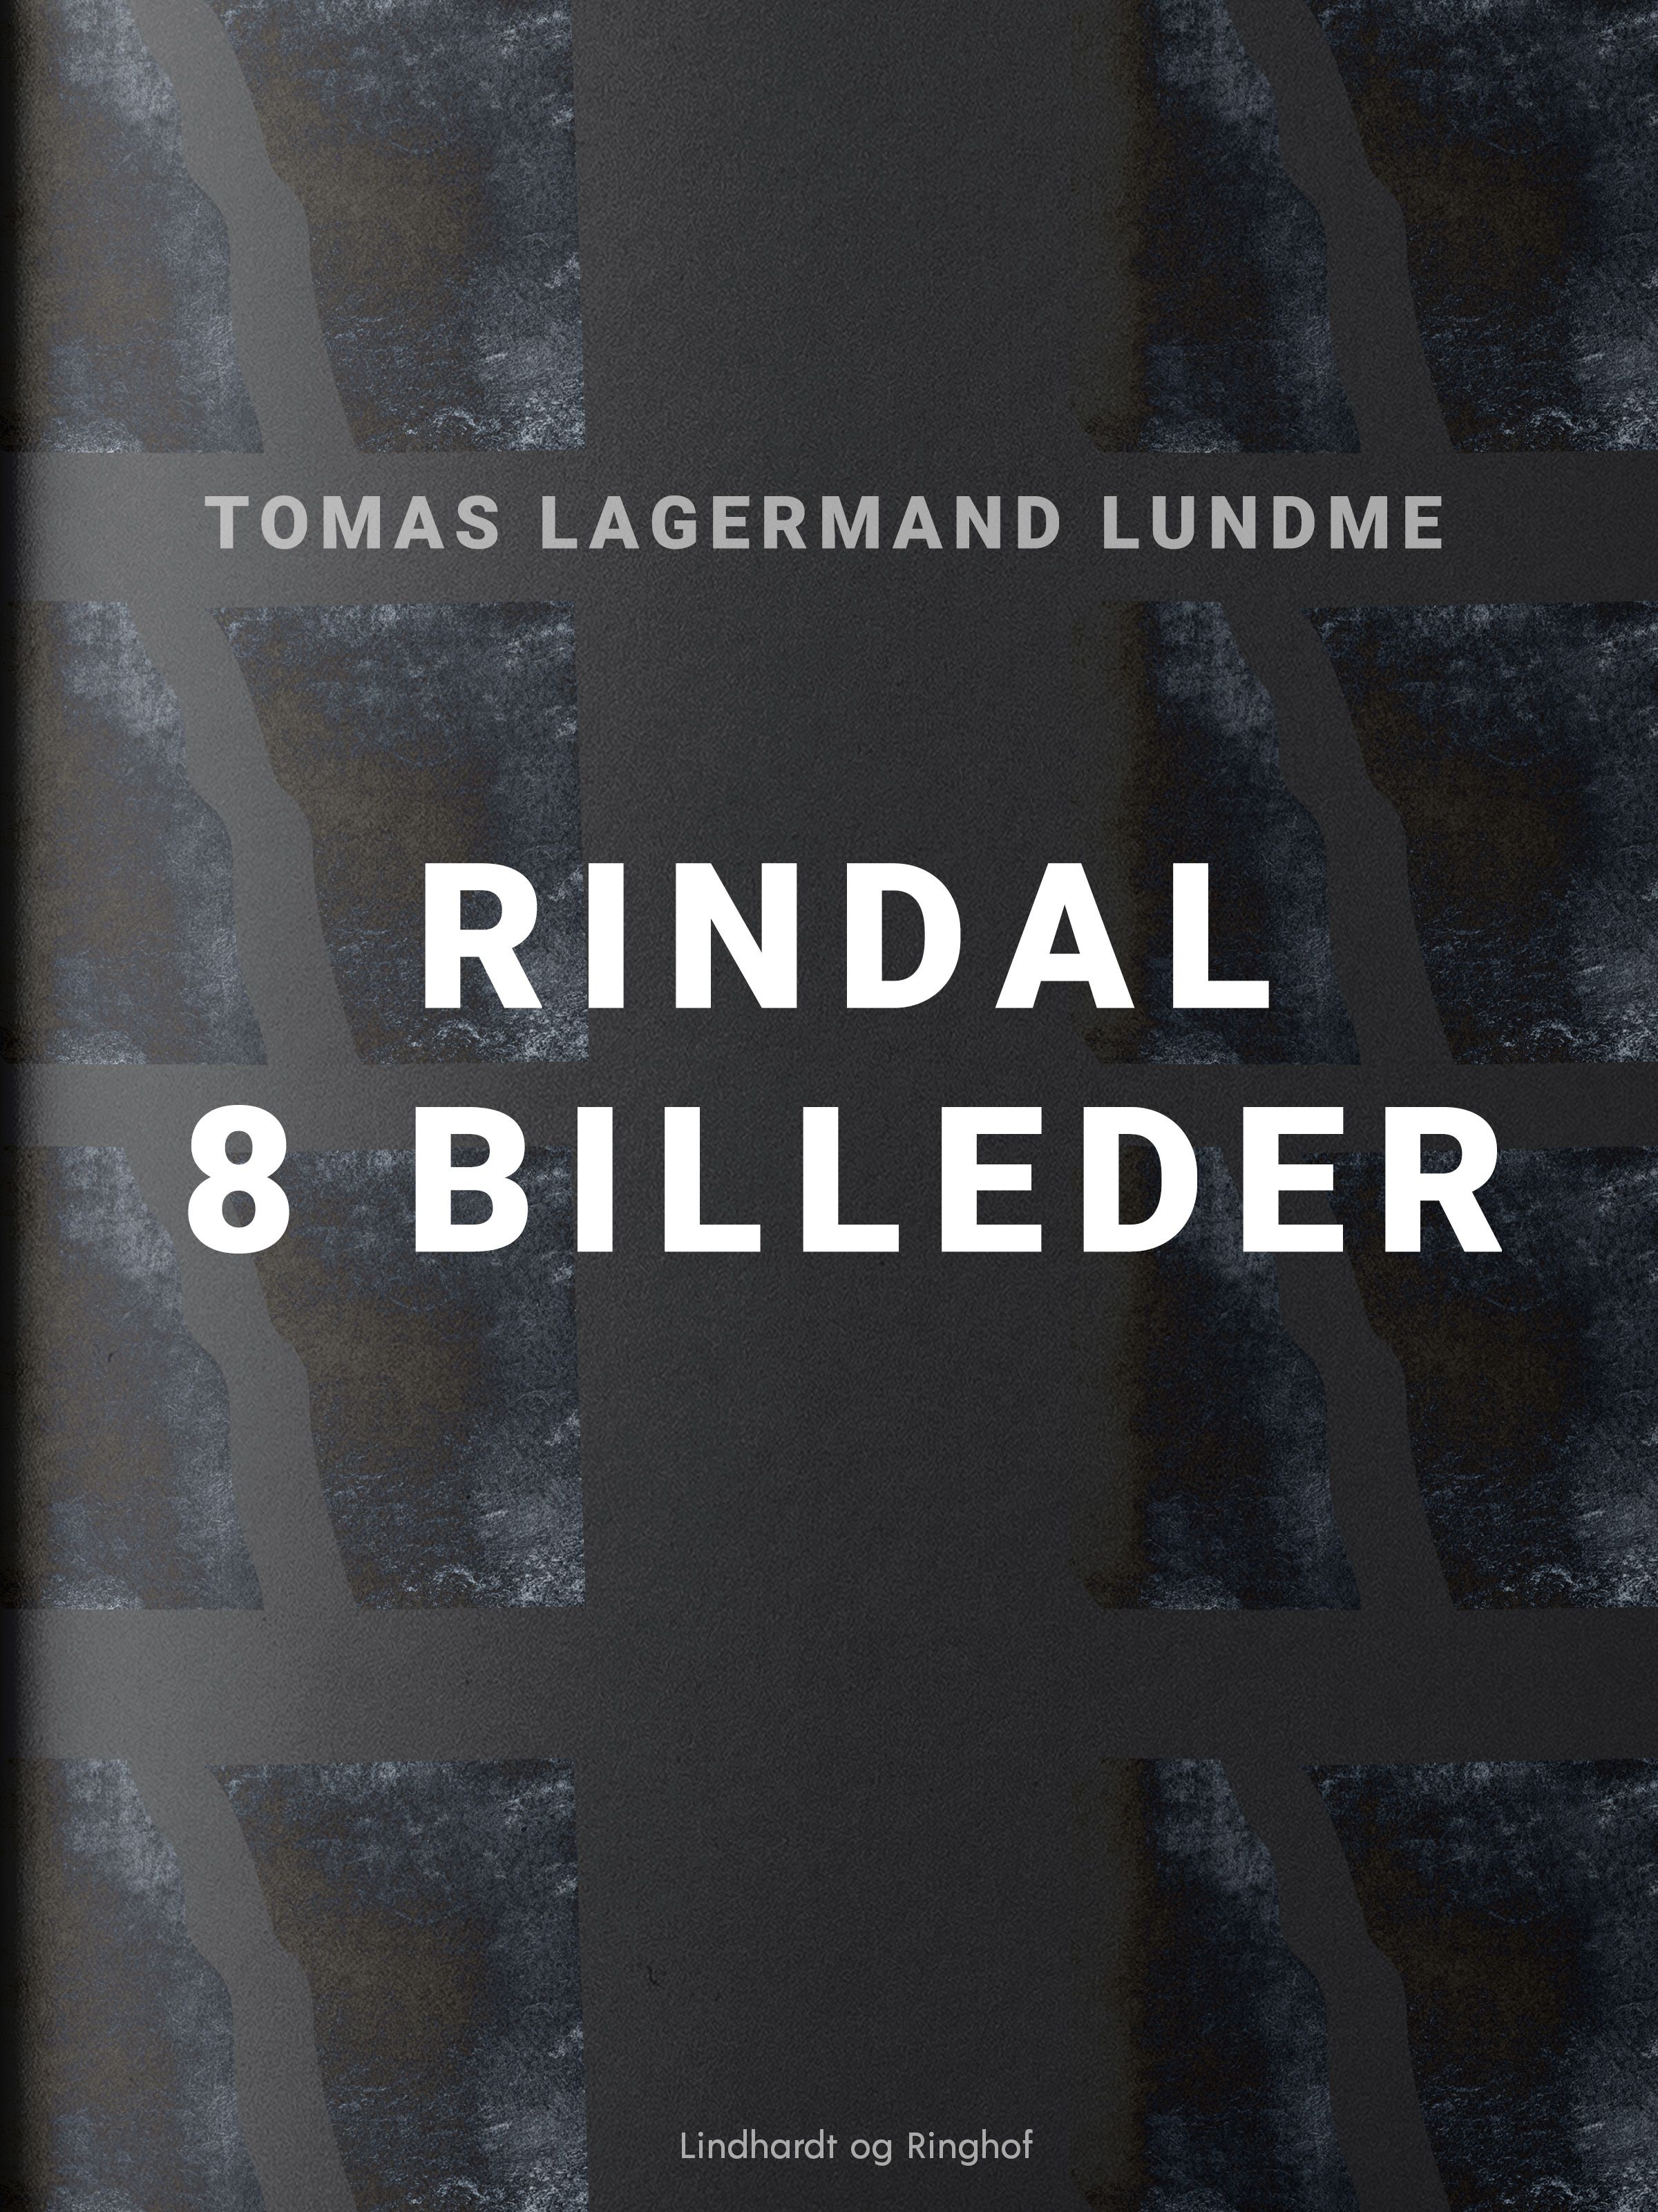 Rindal - 8 billeder, e-bok av Tomas Lagermand Lundme